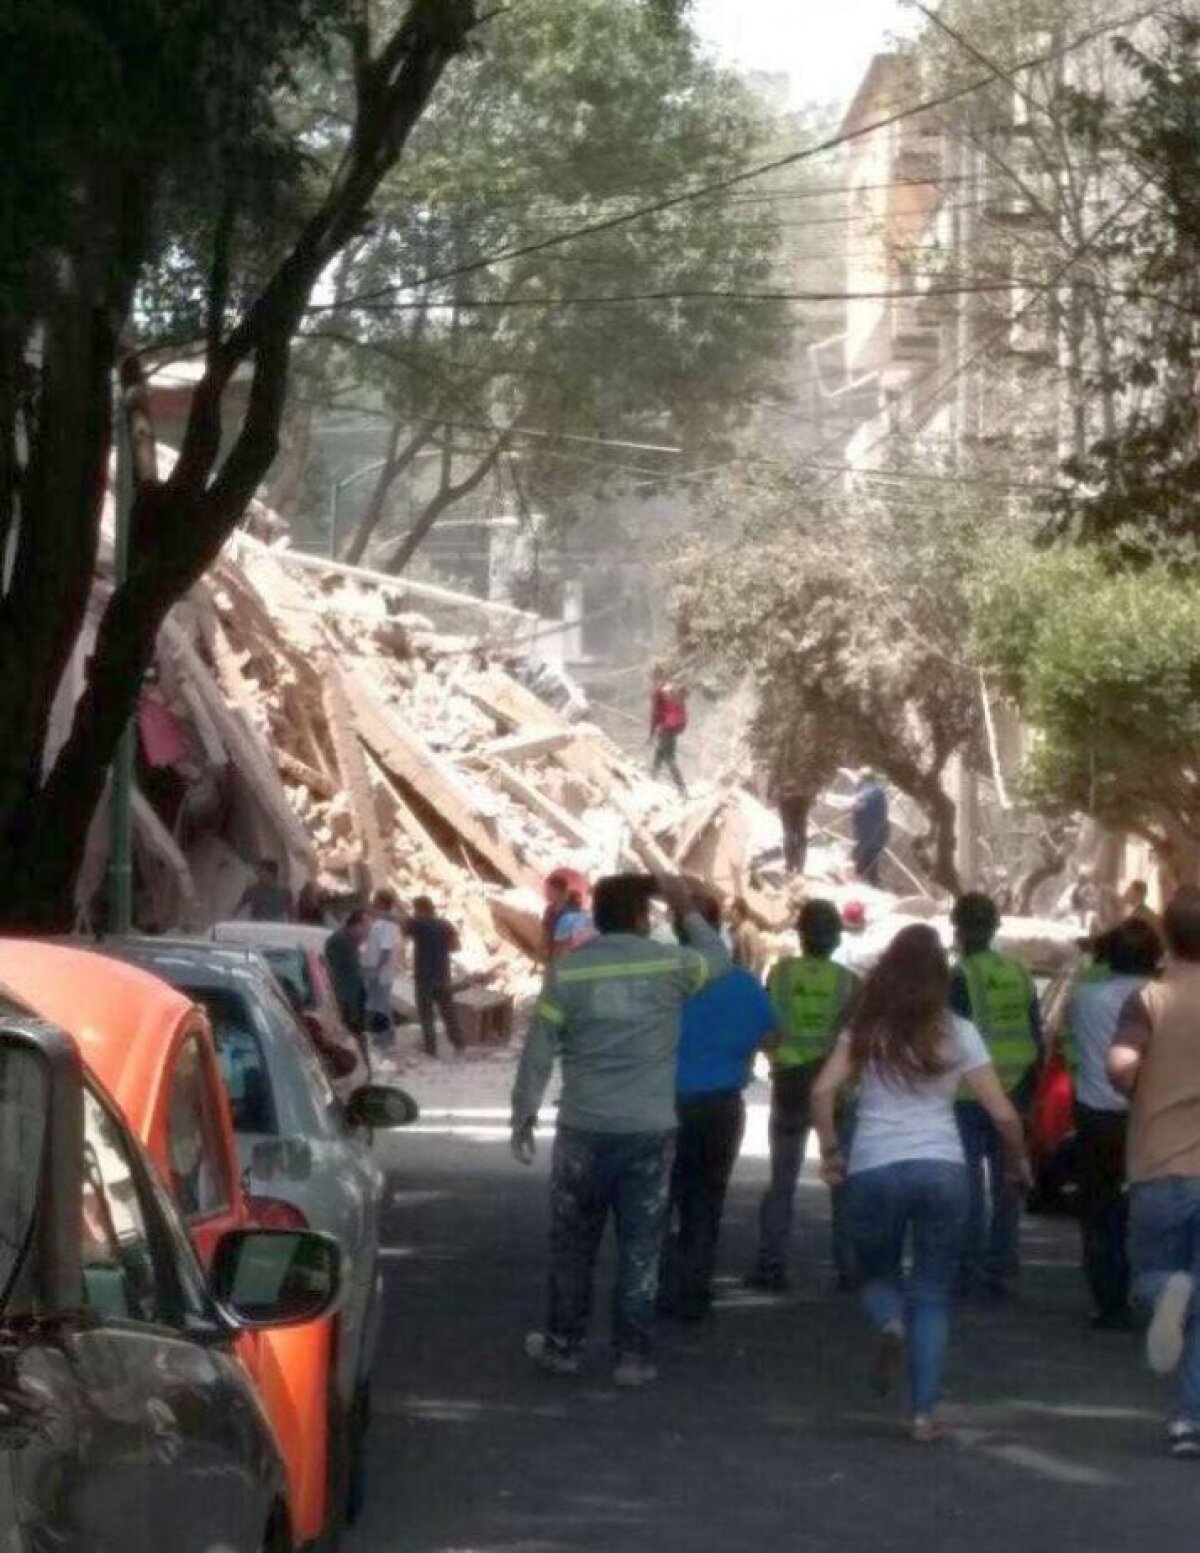 VIDEO Cutremur devastator în Mexic! Cel puțin 248 de morți în seismul de 7,1 grade! A fost afectat și miticul stadion ”Azteca” 